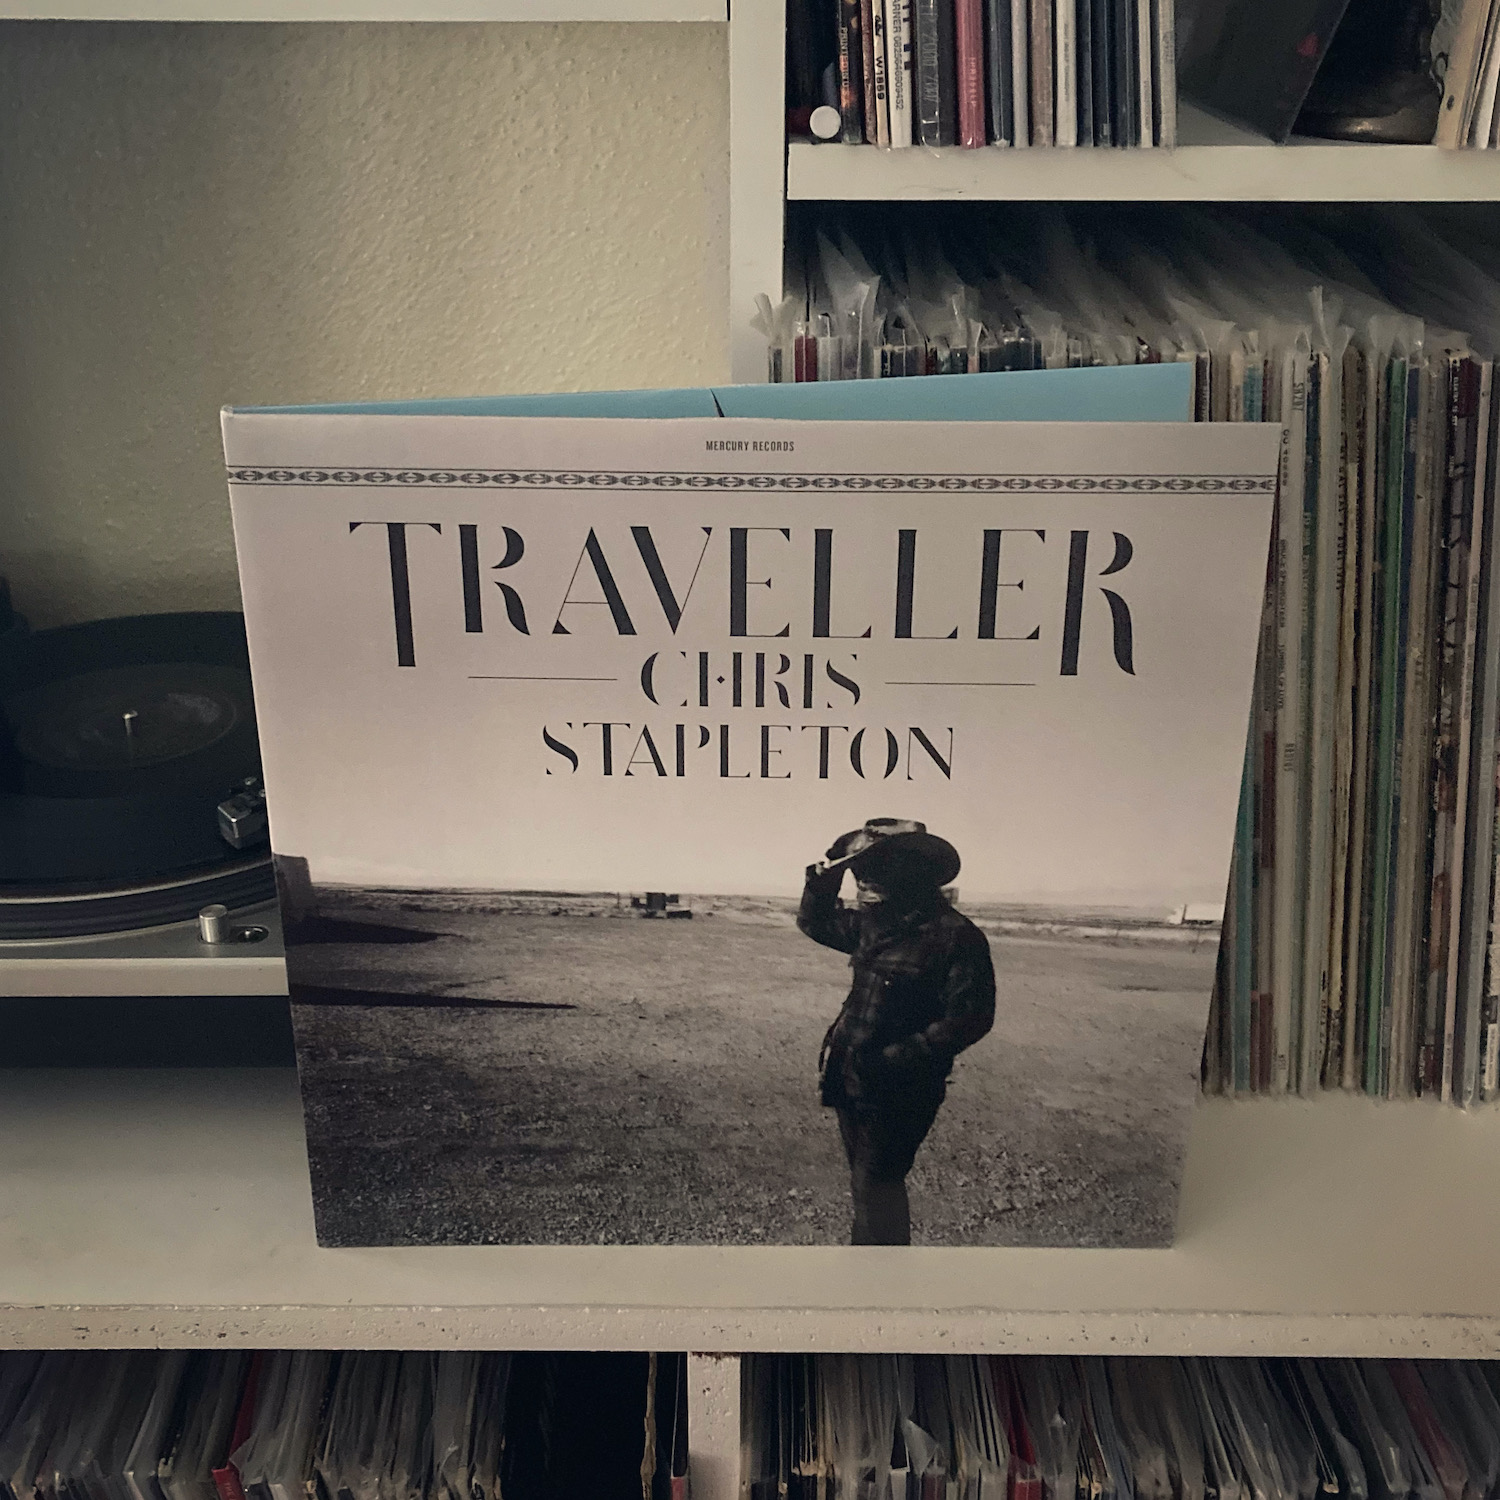 chris stapleton traveller album vinyl